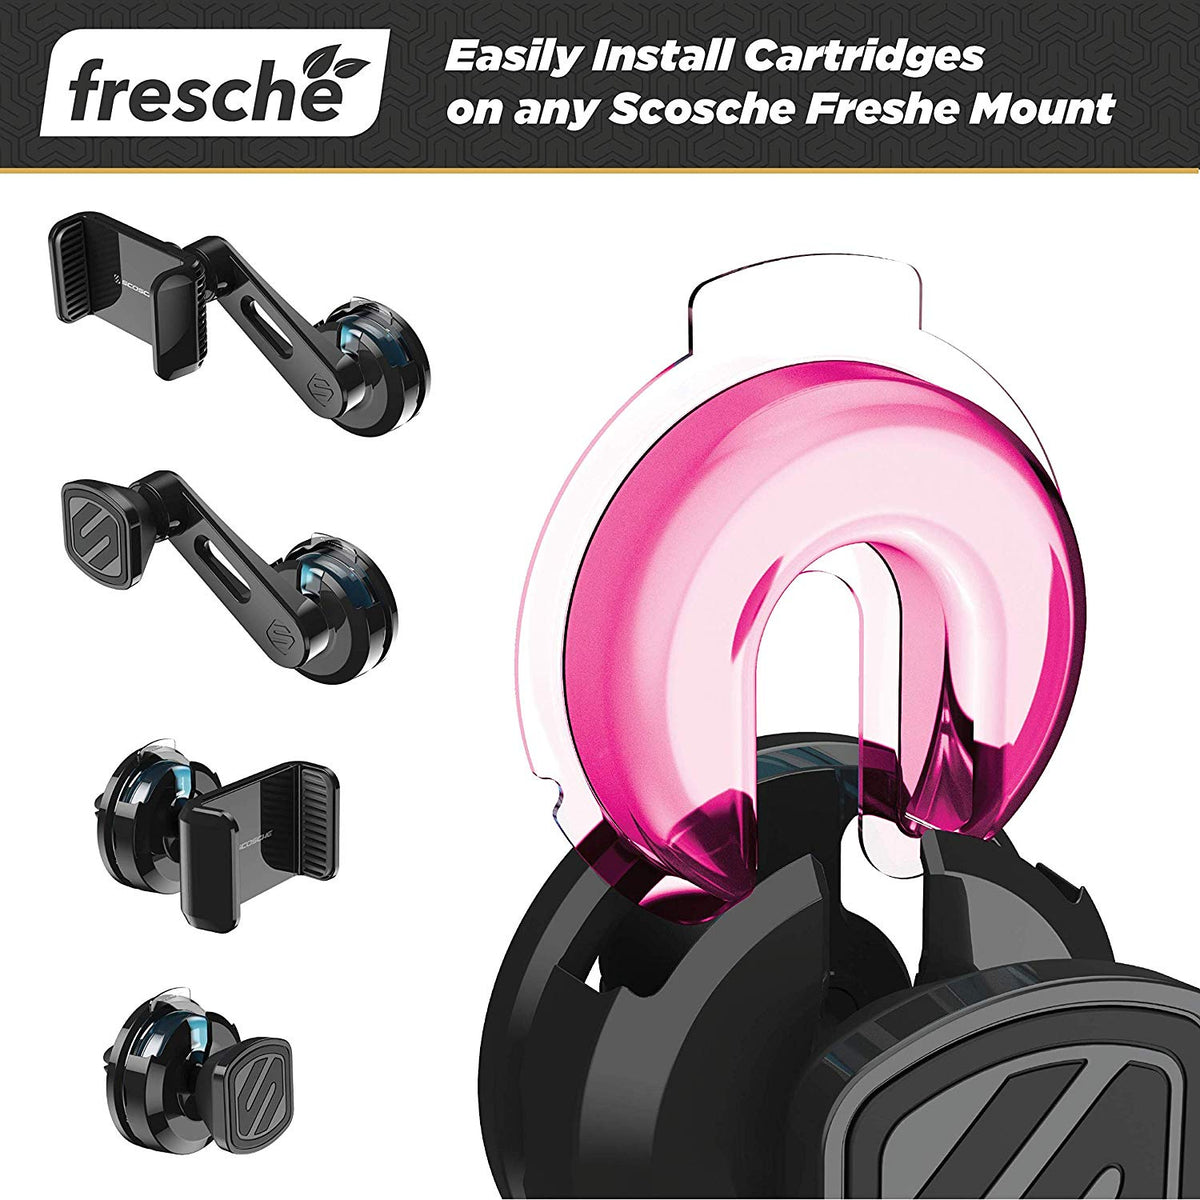 SCOSCHE Air Freshener Refill Cartridges for Fresche Mounts - 2 Packs - Tropical